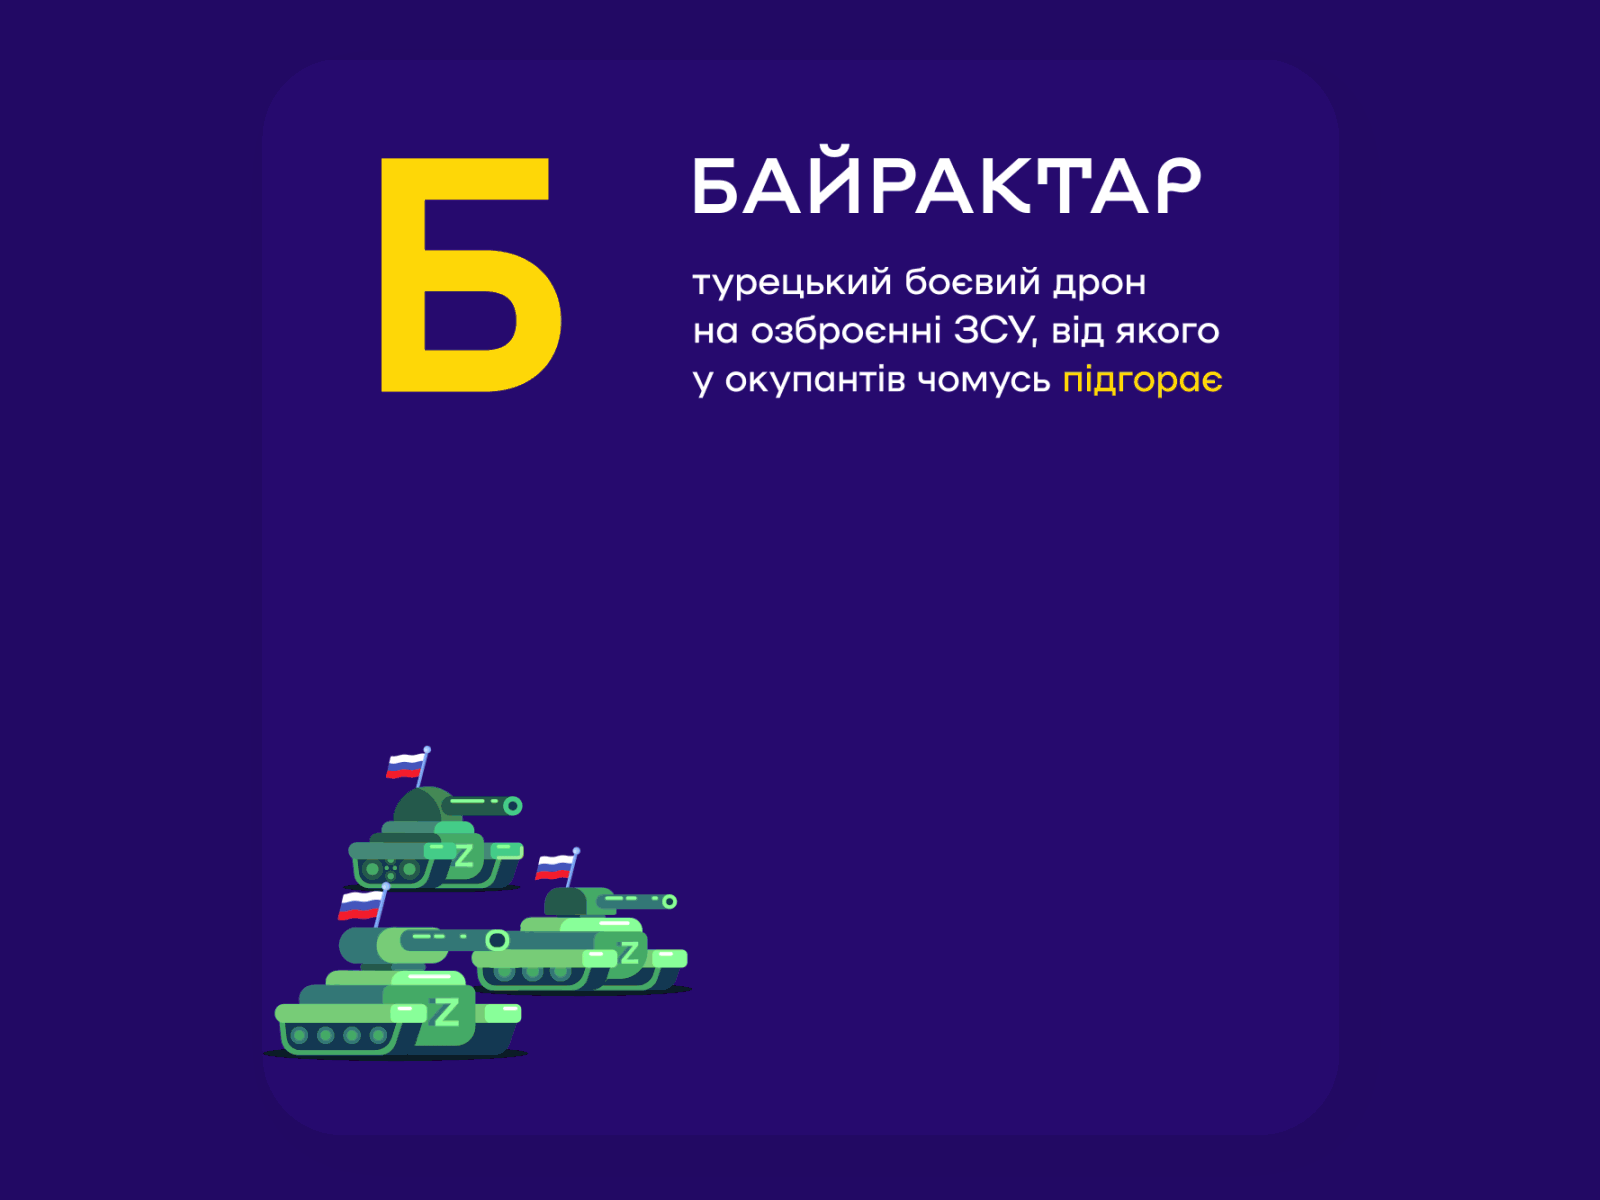 Ukrainian Alphabet of War – «Б» Bayraktar animated gif gif lottie ukraine war